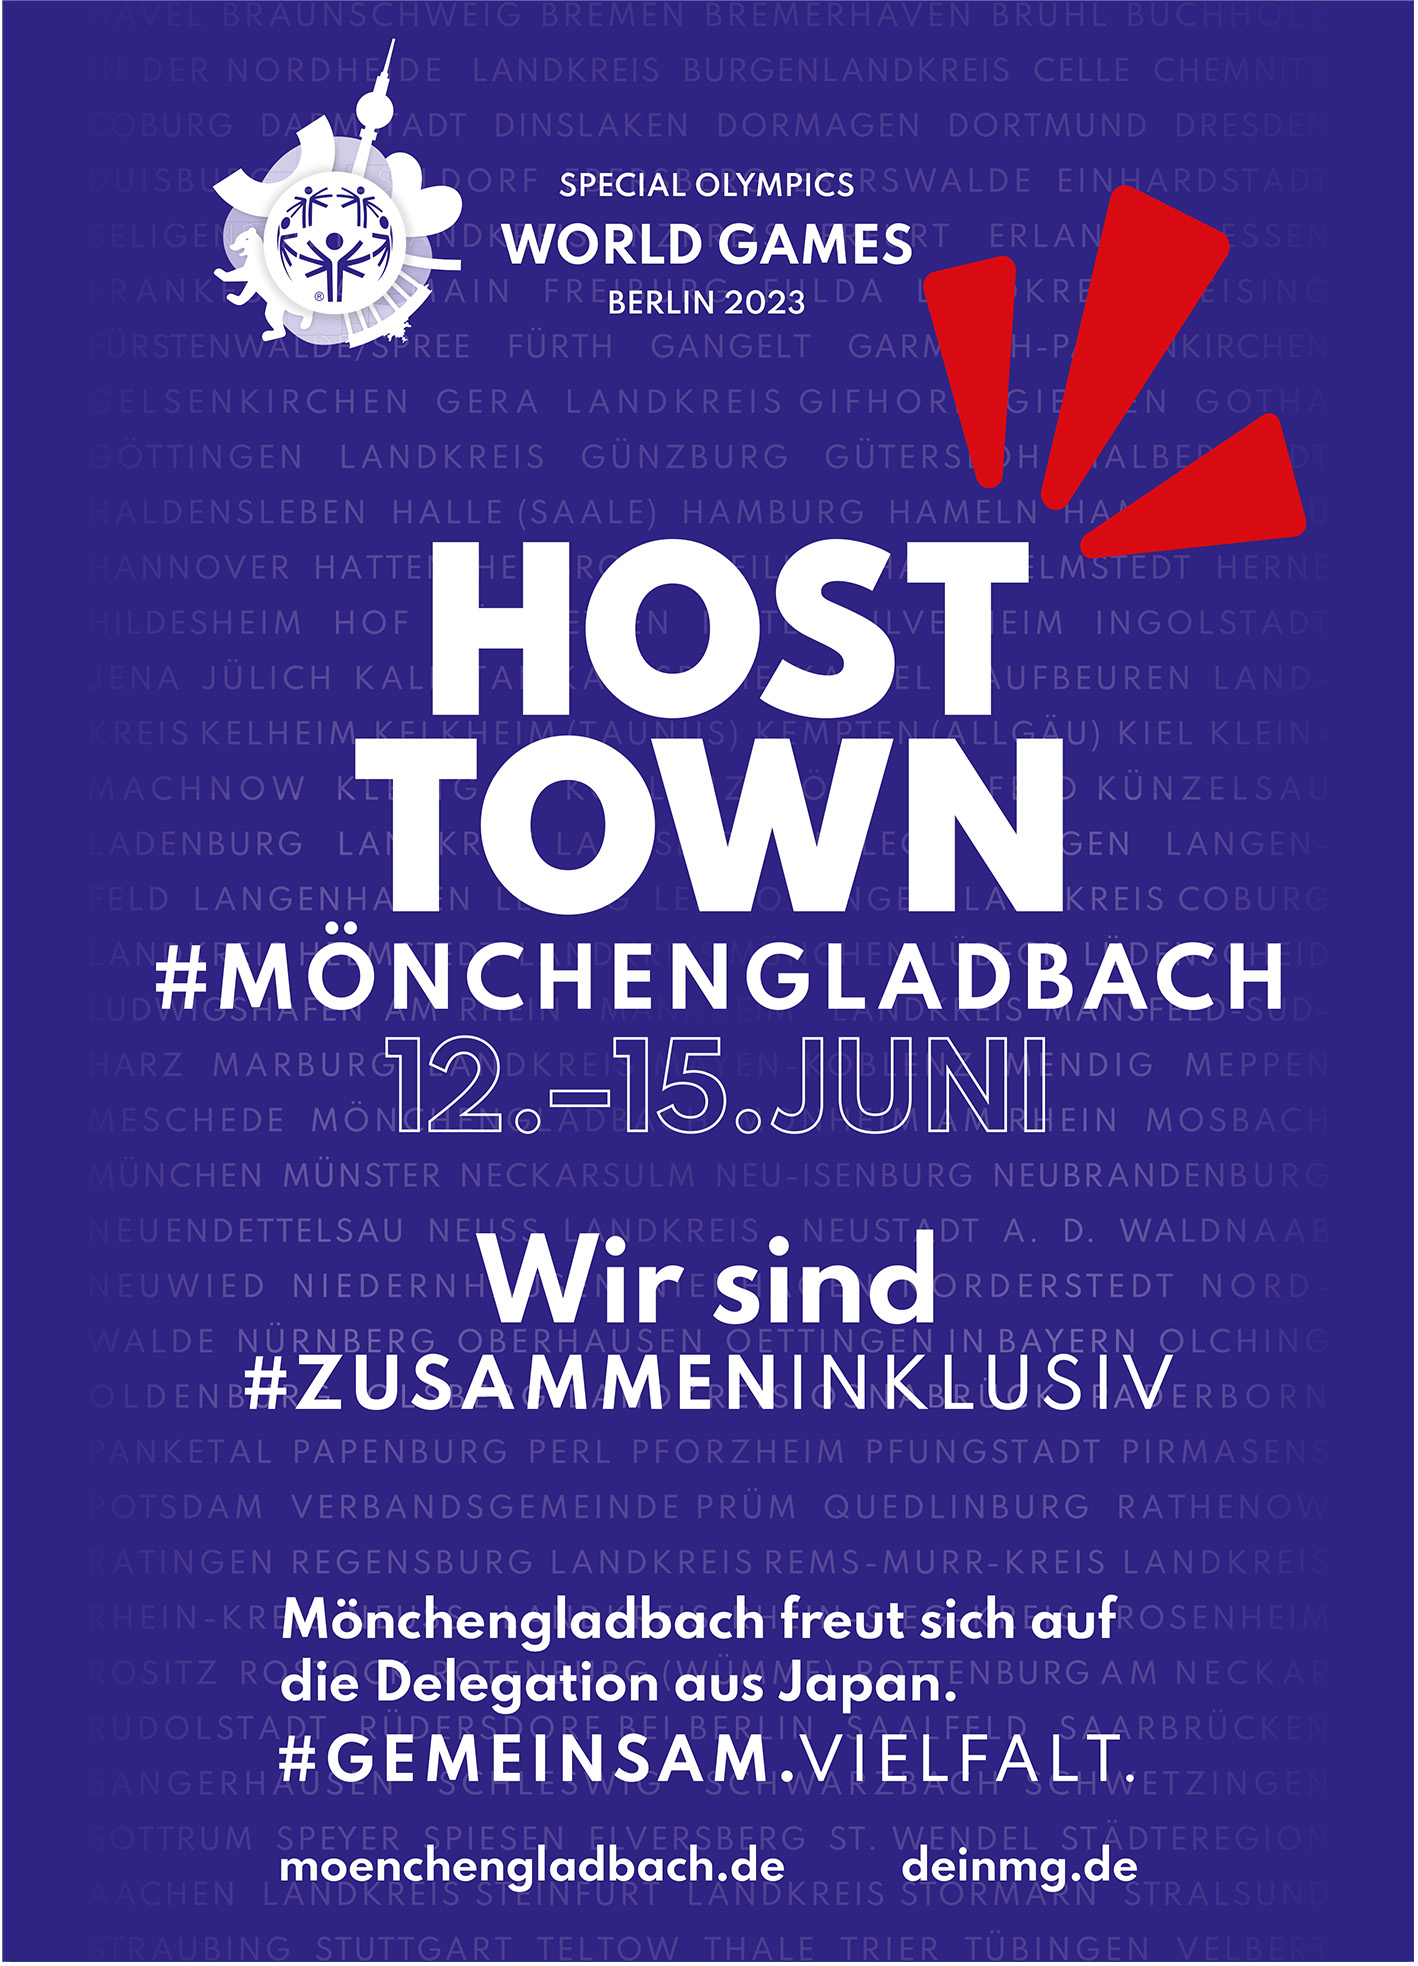 Mönchengladbach ist Host Town